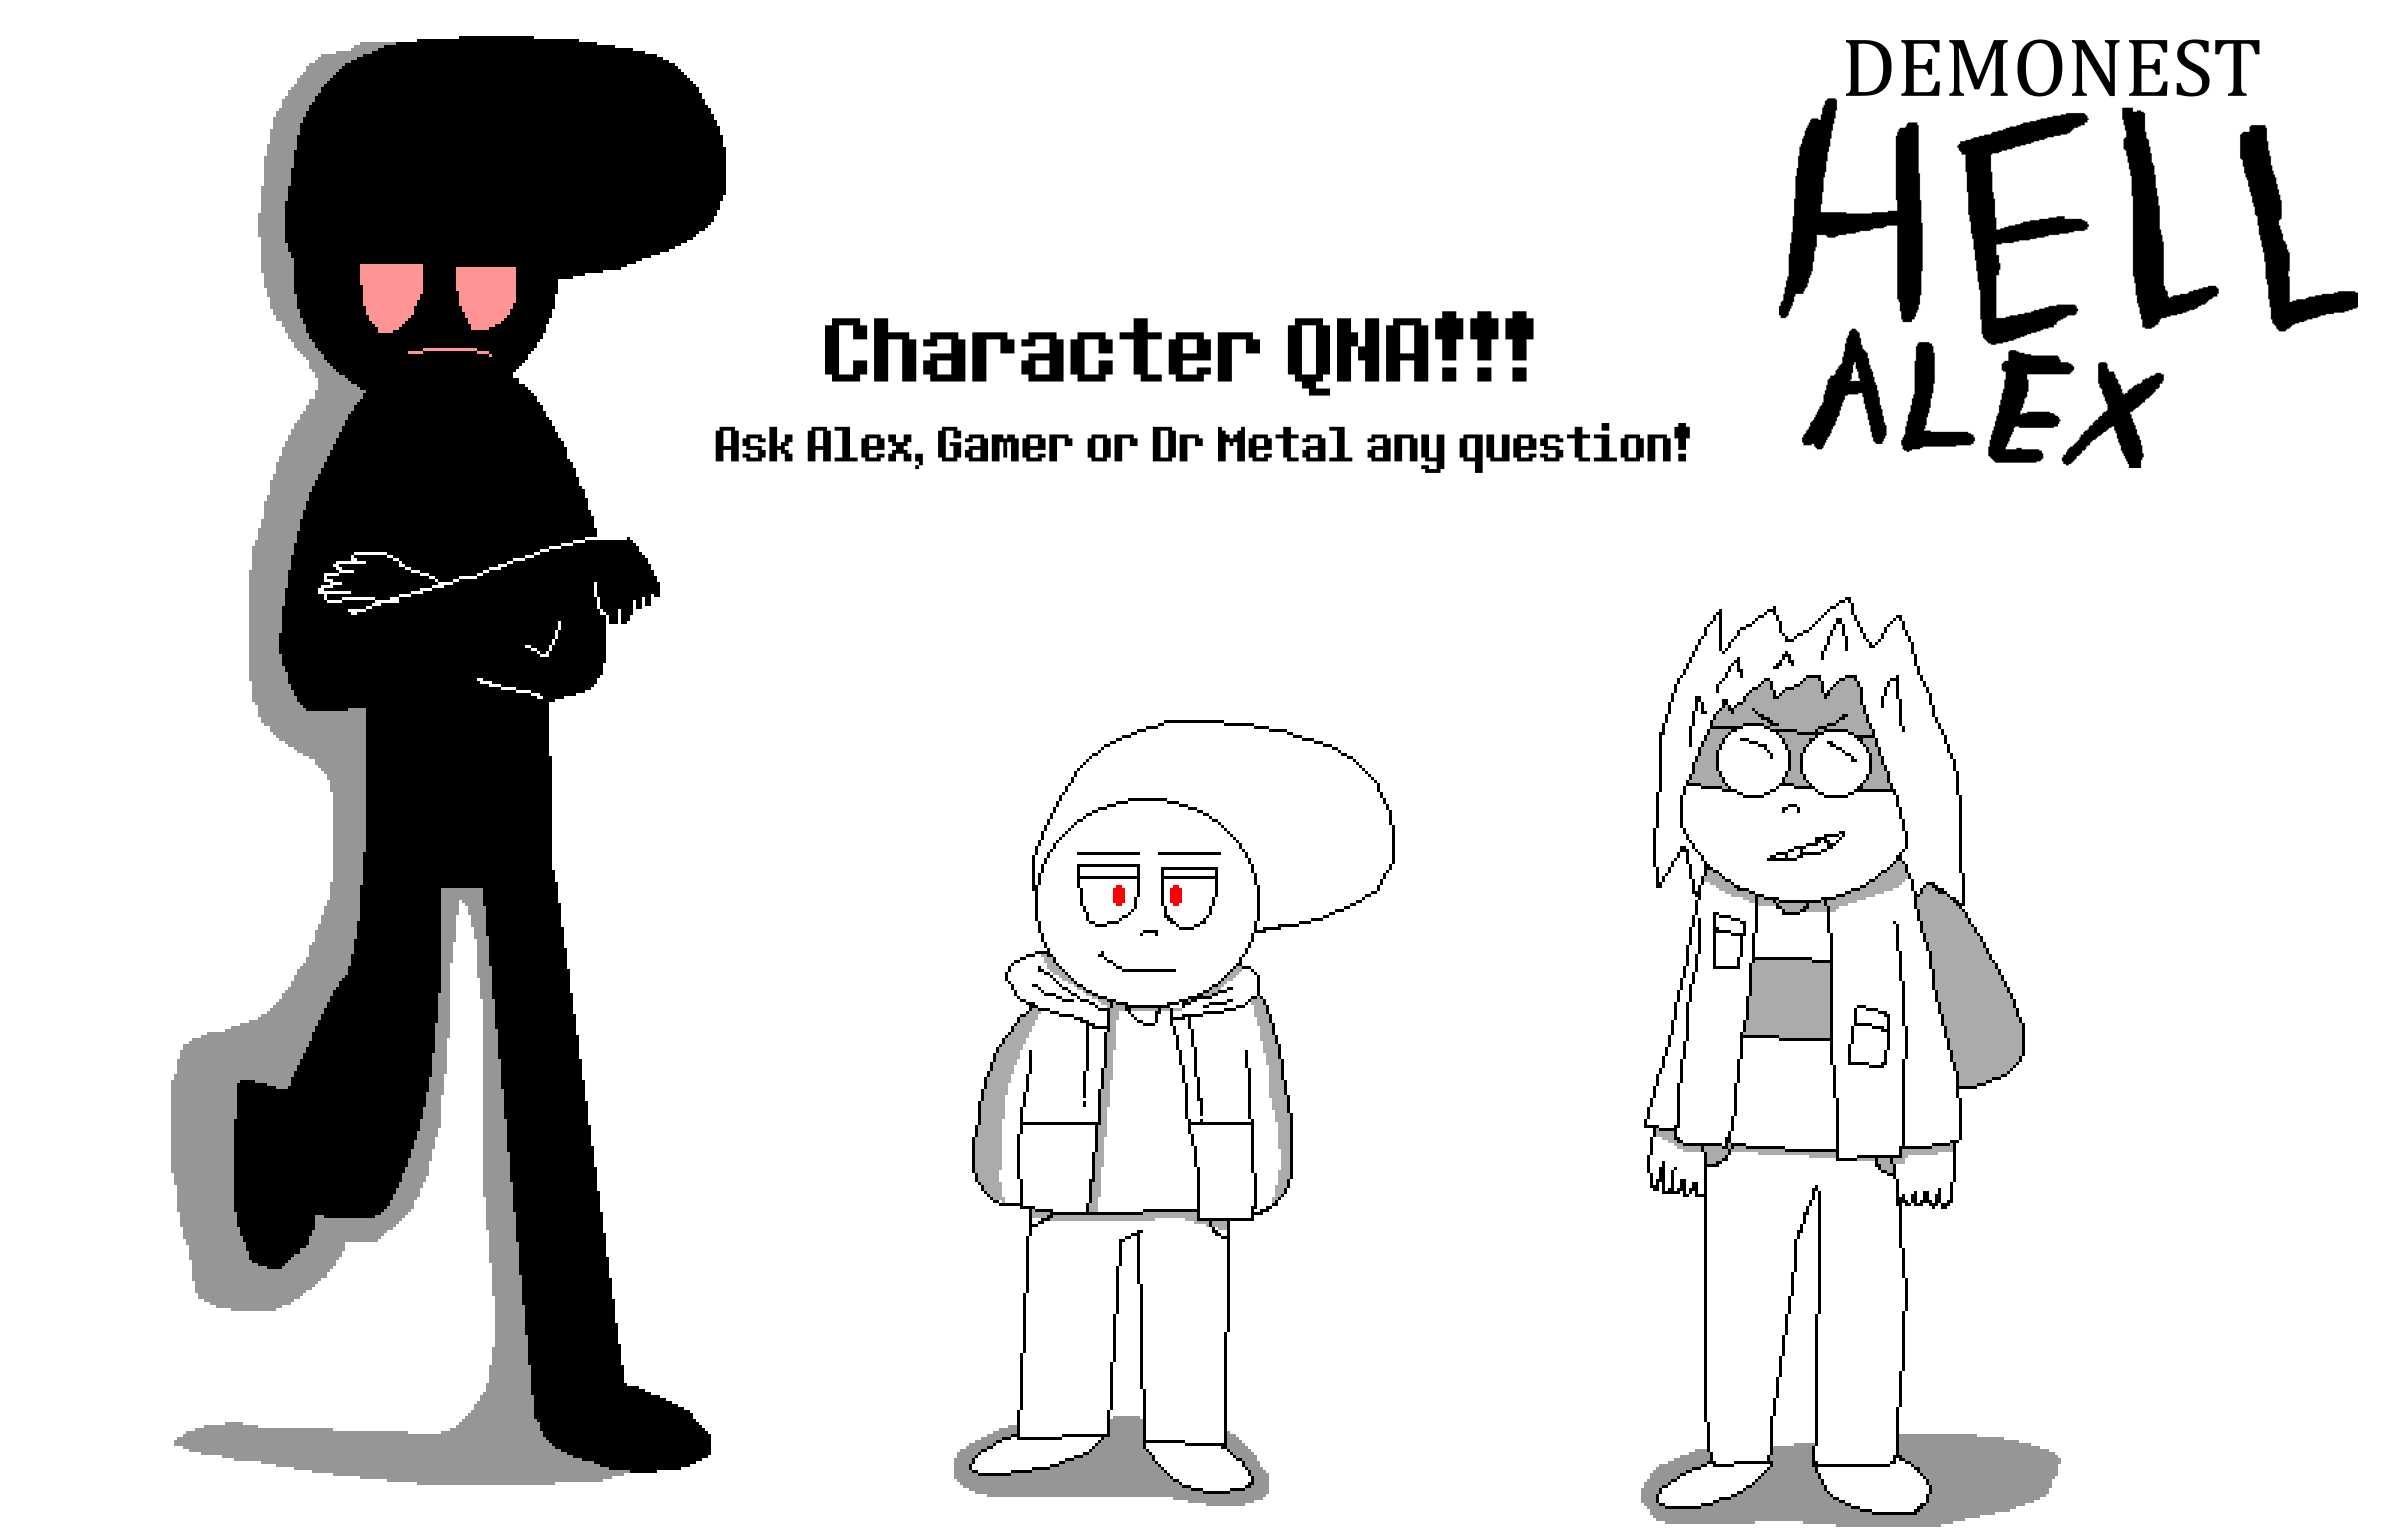 hell alex character qna